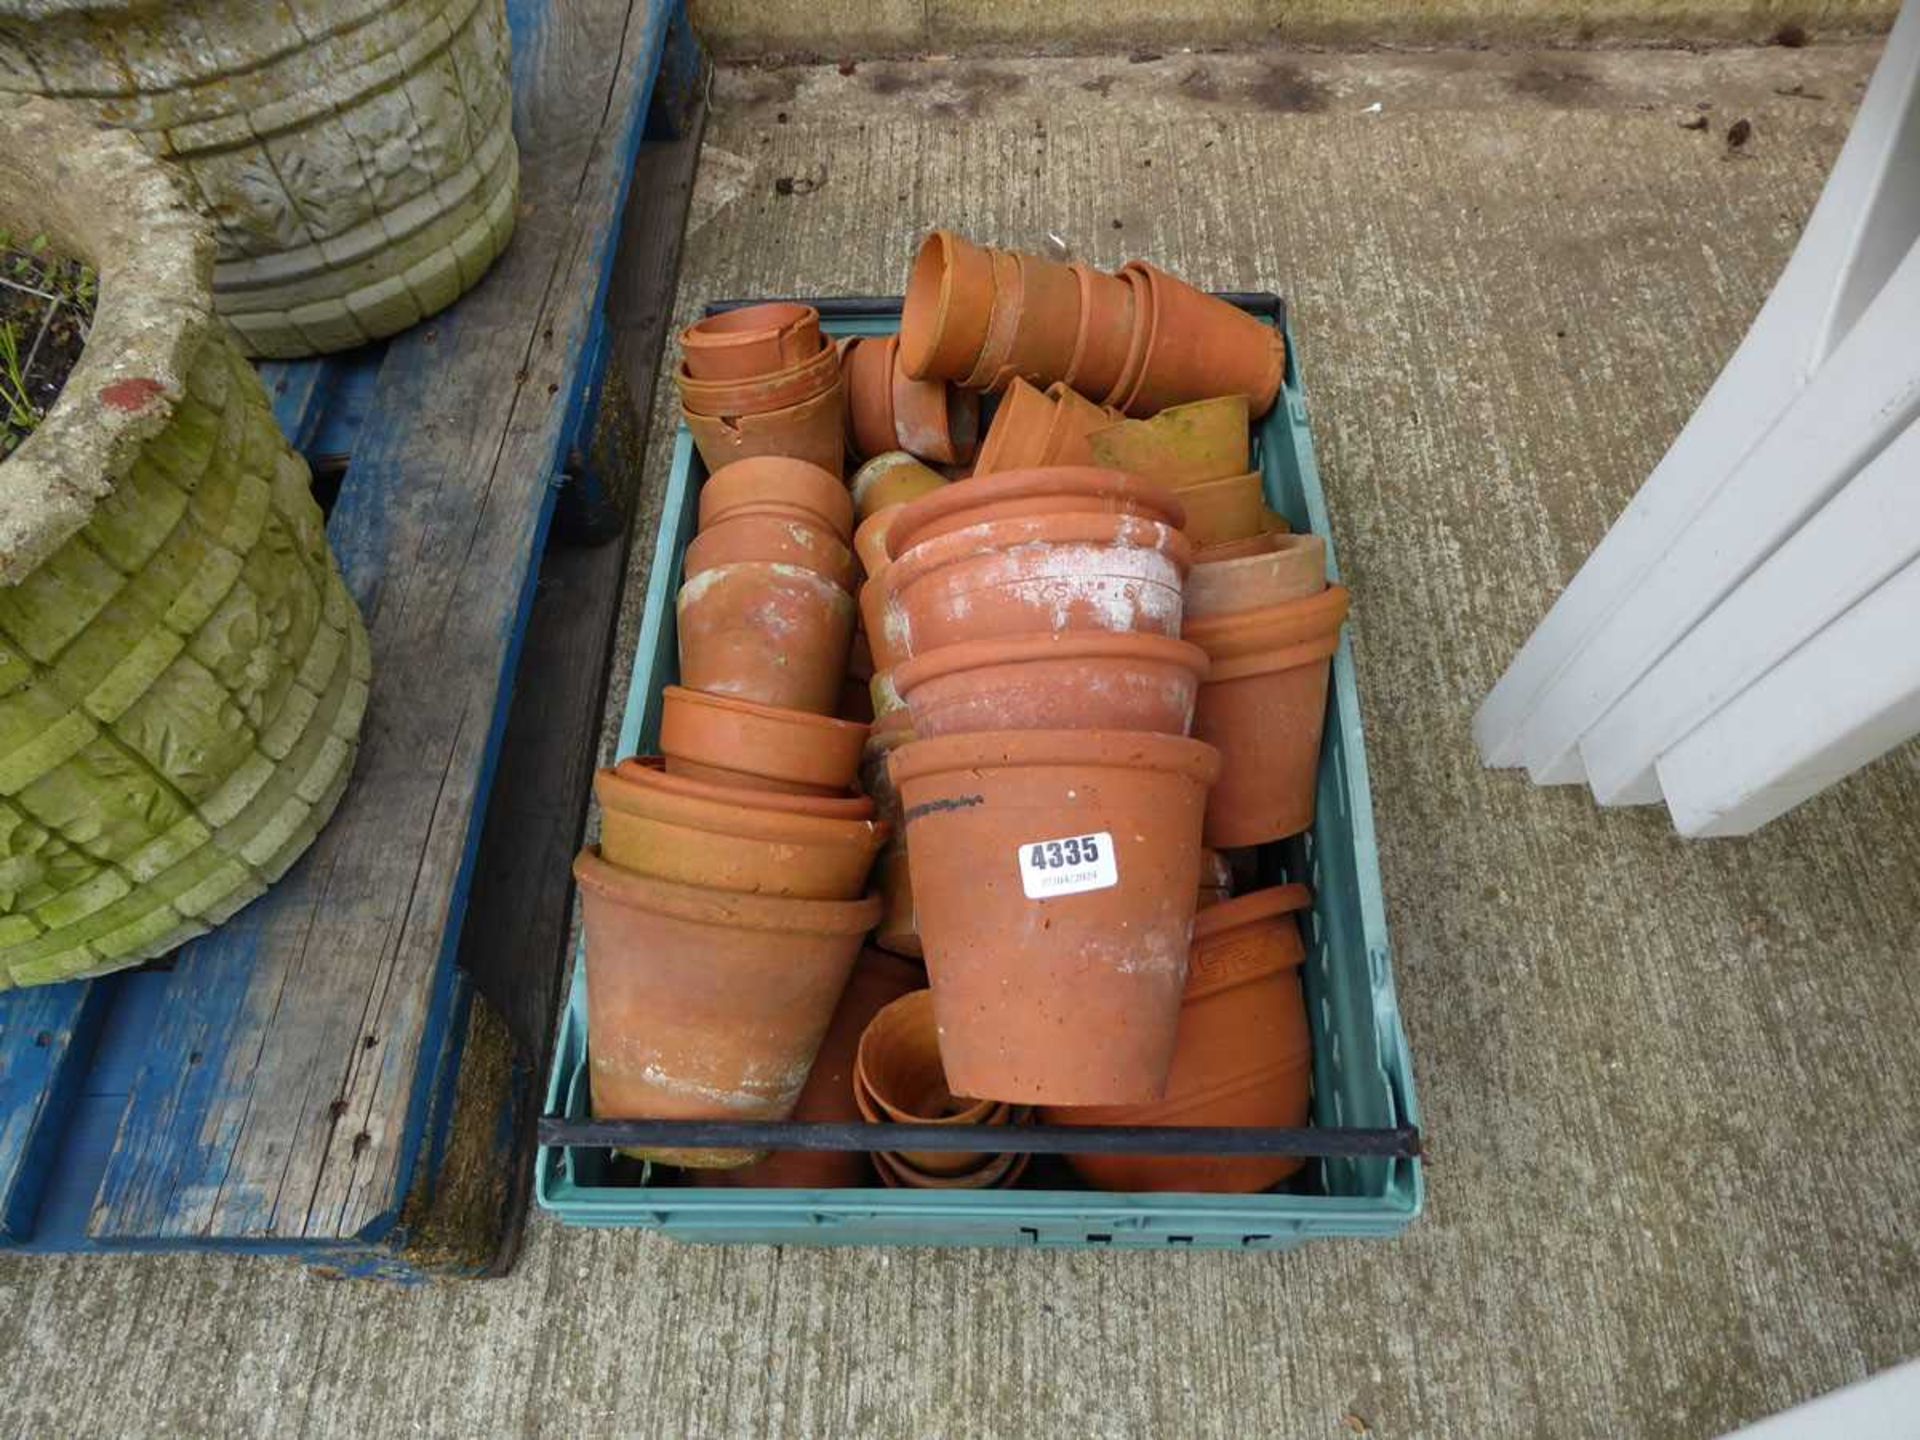 Tray of terracotta pots